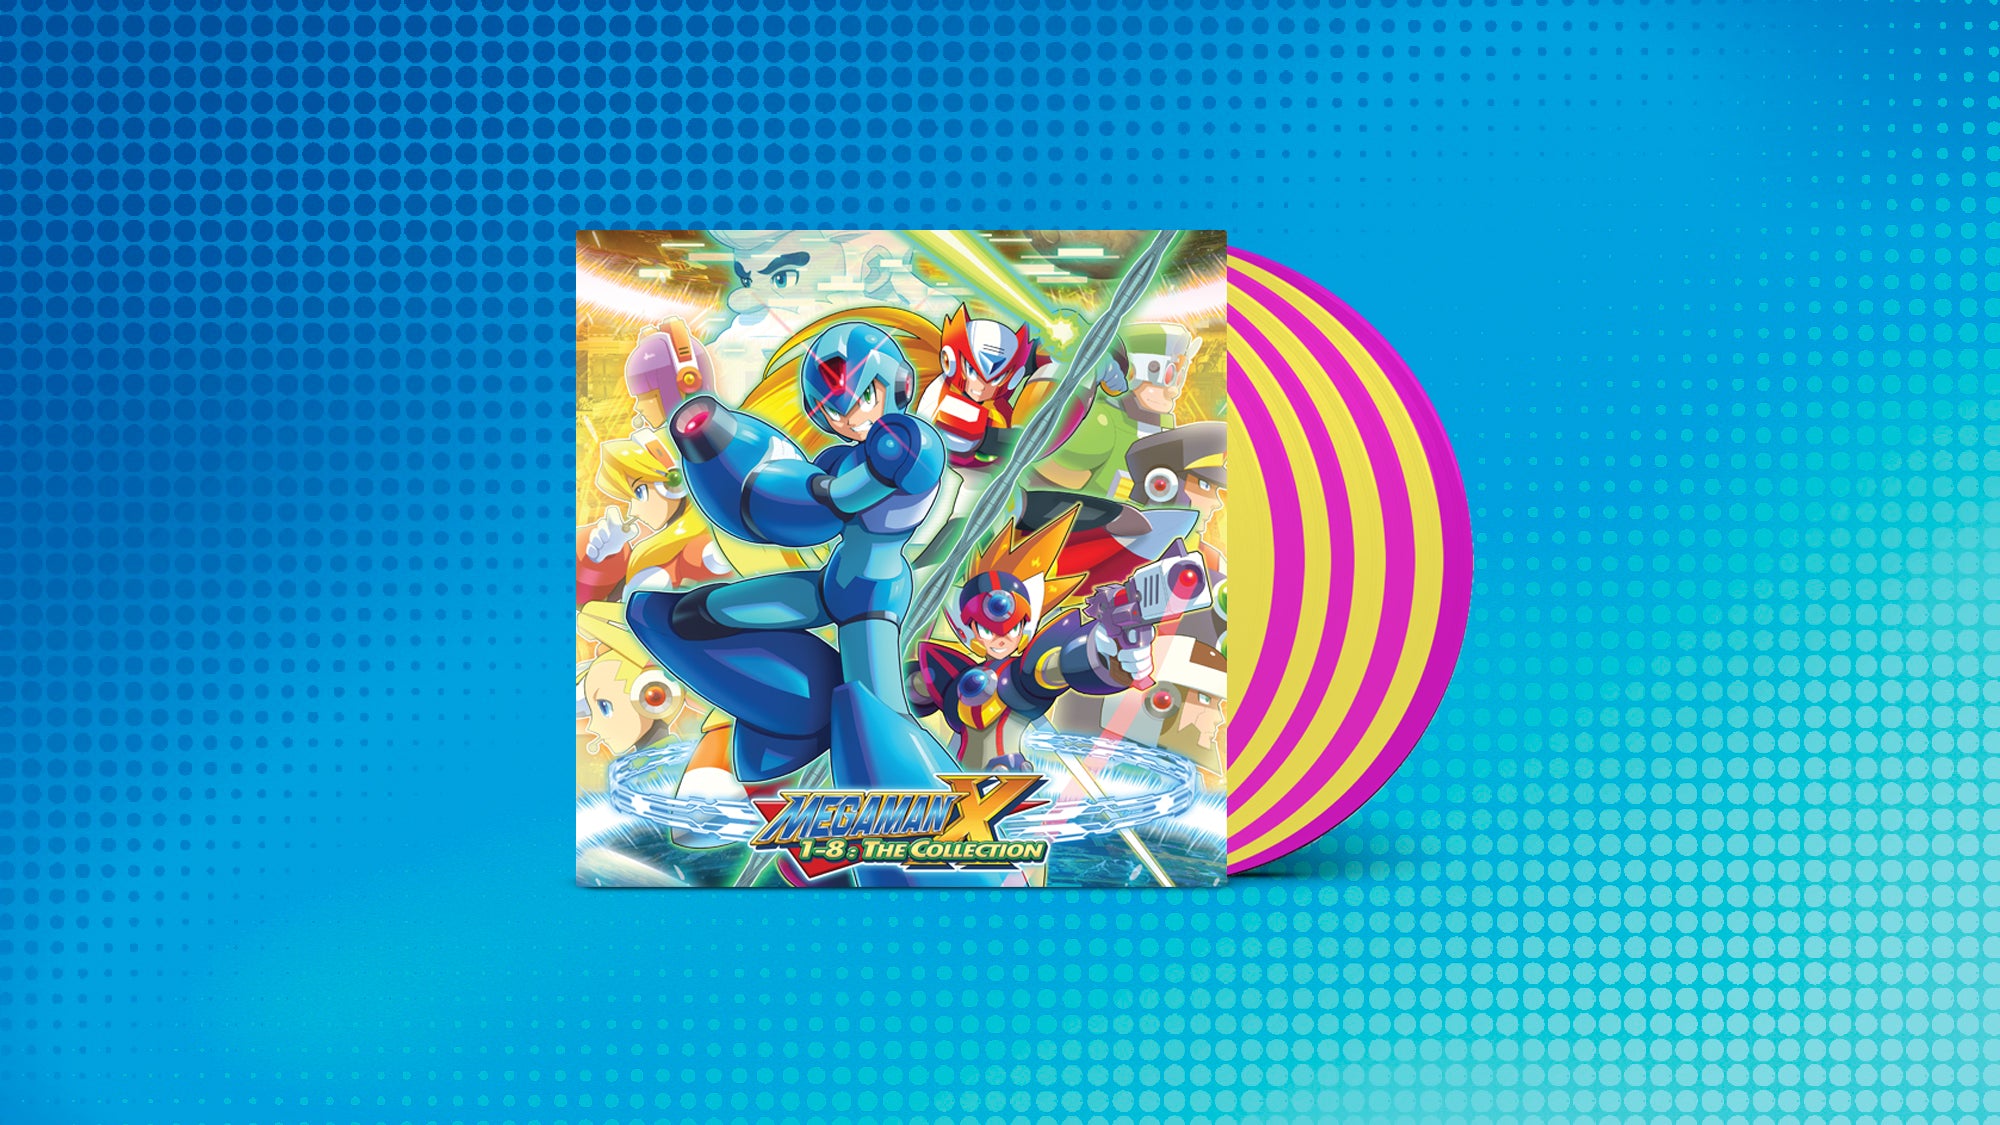 The Mega Man X 1-8 vinyl box set